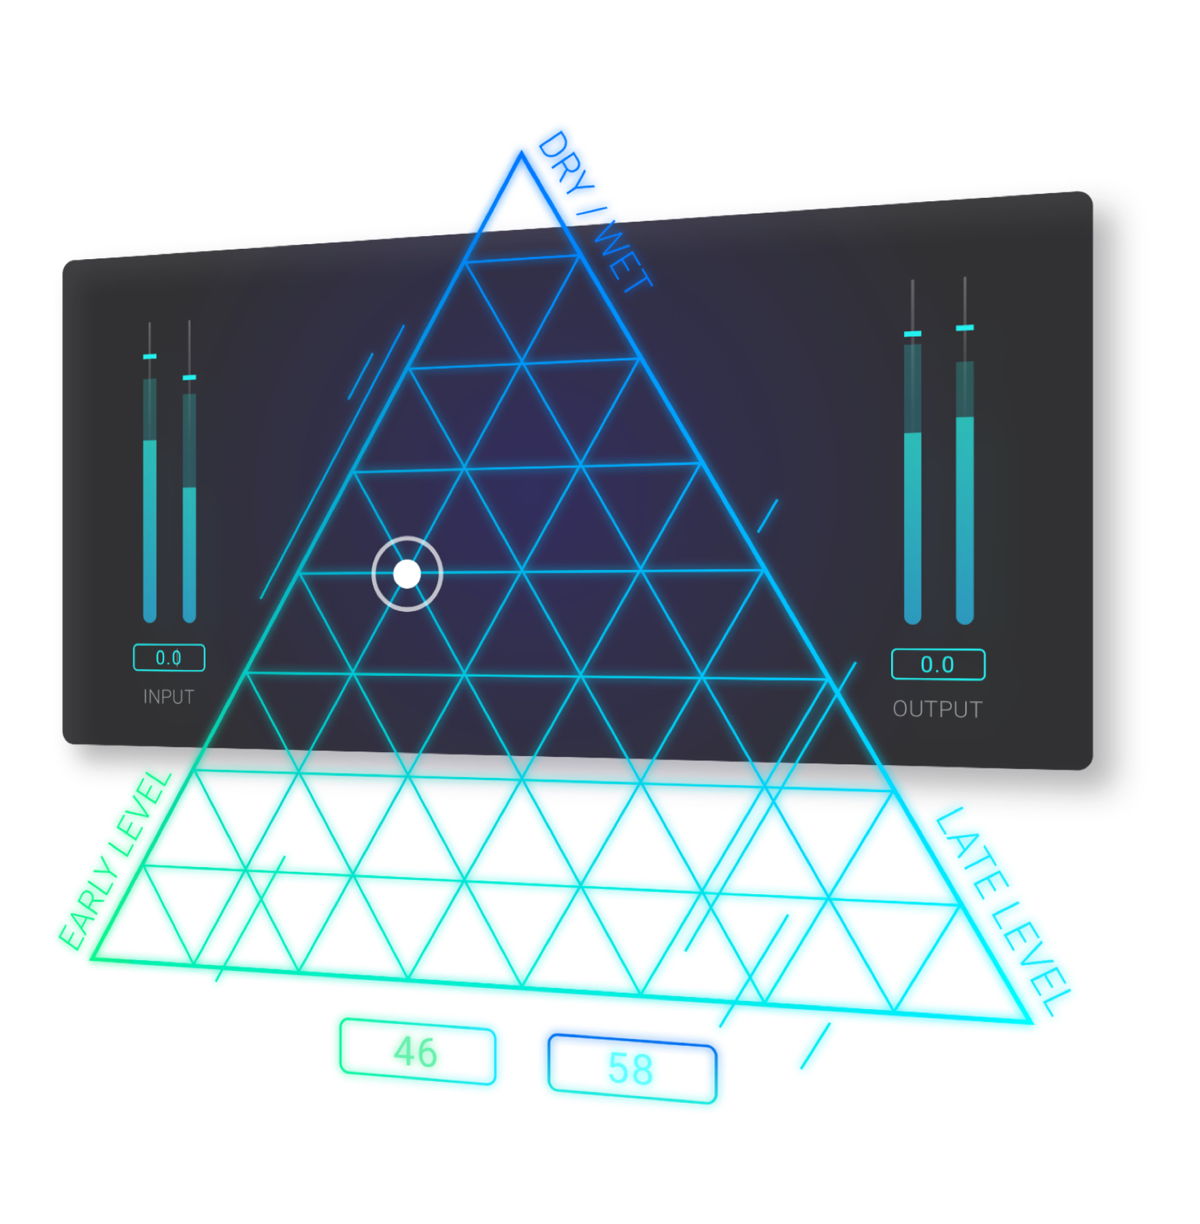 Beschleunigt den kreativen Mixprozess: Mit dem innovativen Dreieckspad des EXOVERB MICRO können Nutzer*innen auf intuitive Weise den Sweet Spot treffen